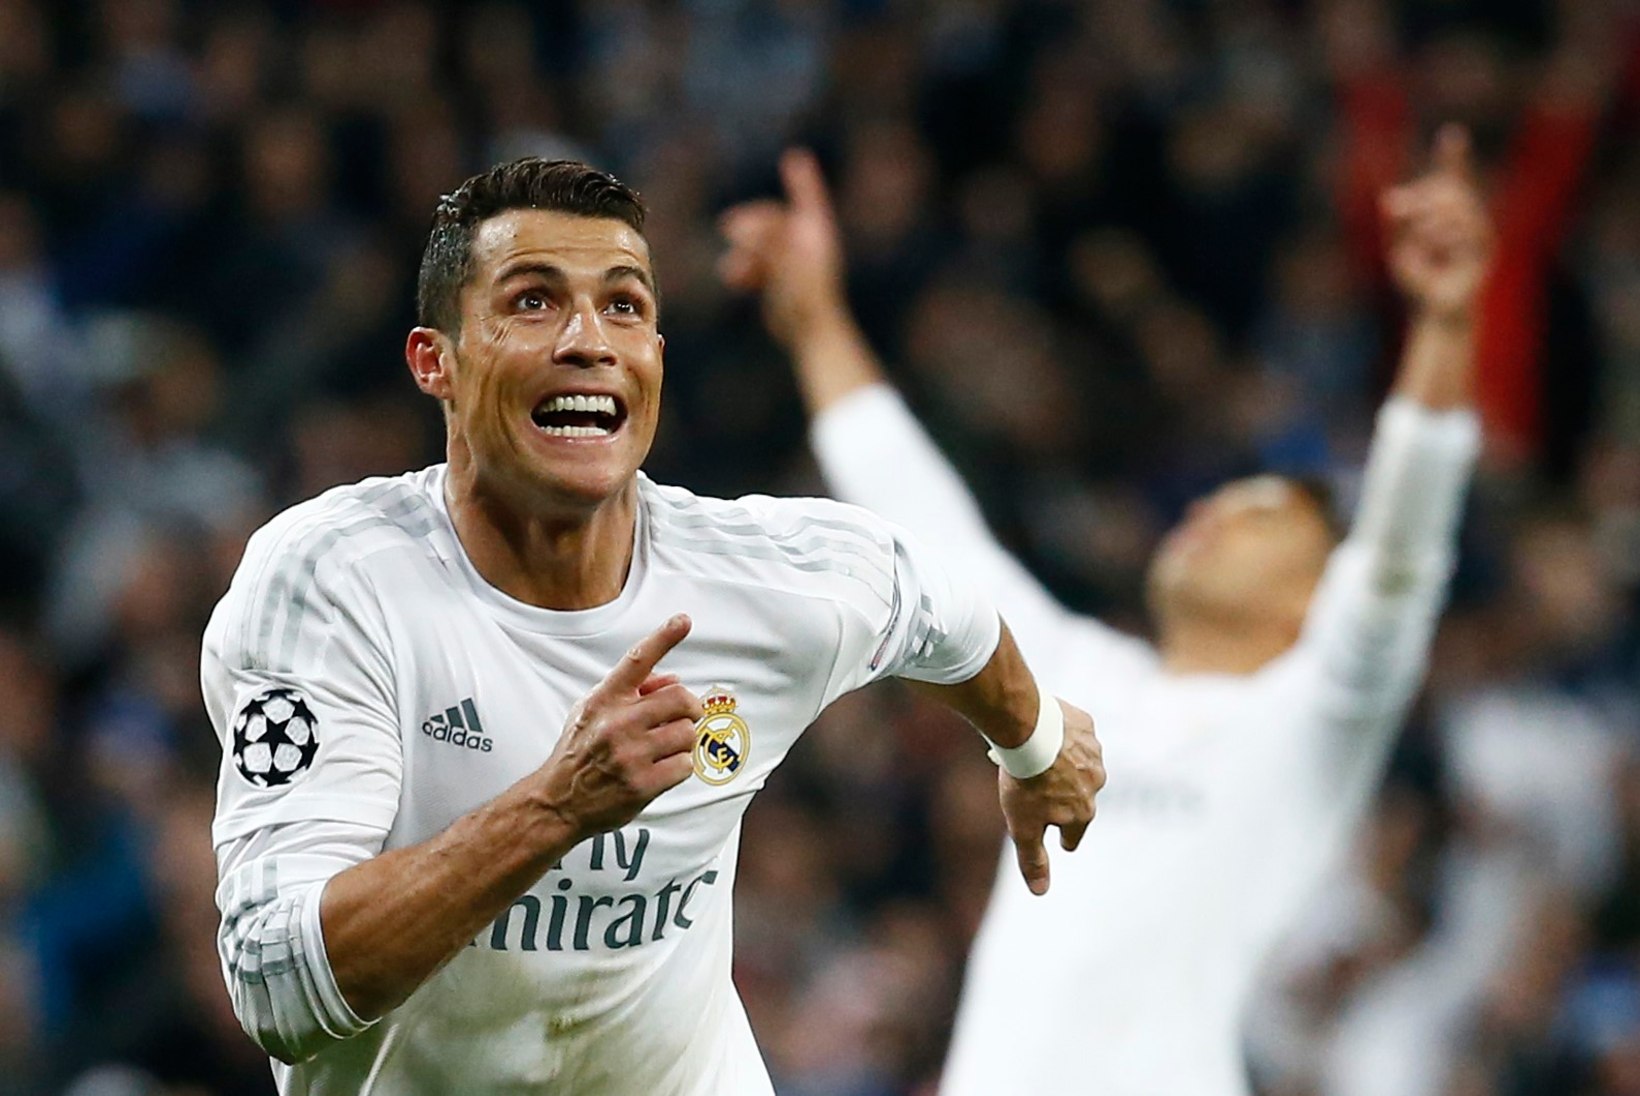 NII SEE JUHTUS | Sport 12.04: Ronaldo kübaratrikk, Kanepi pommuudis, Sillamäe Kalev võidukas